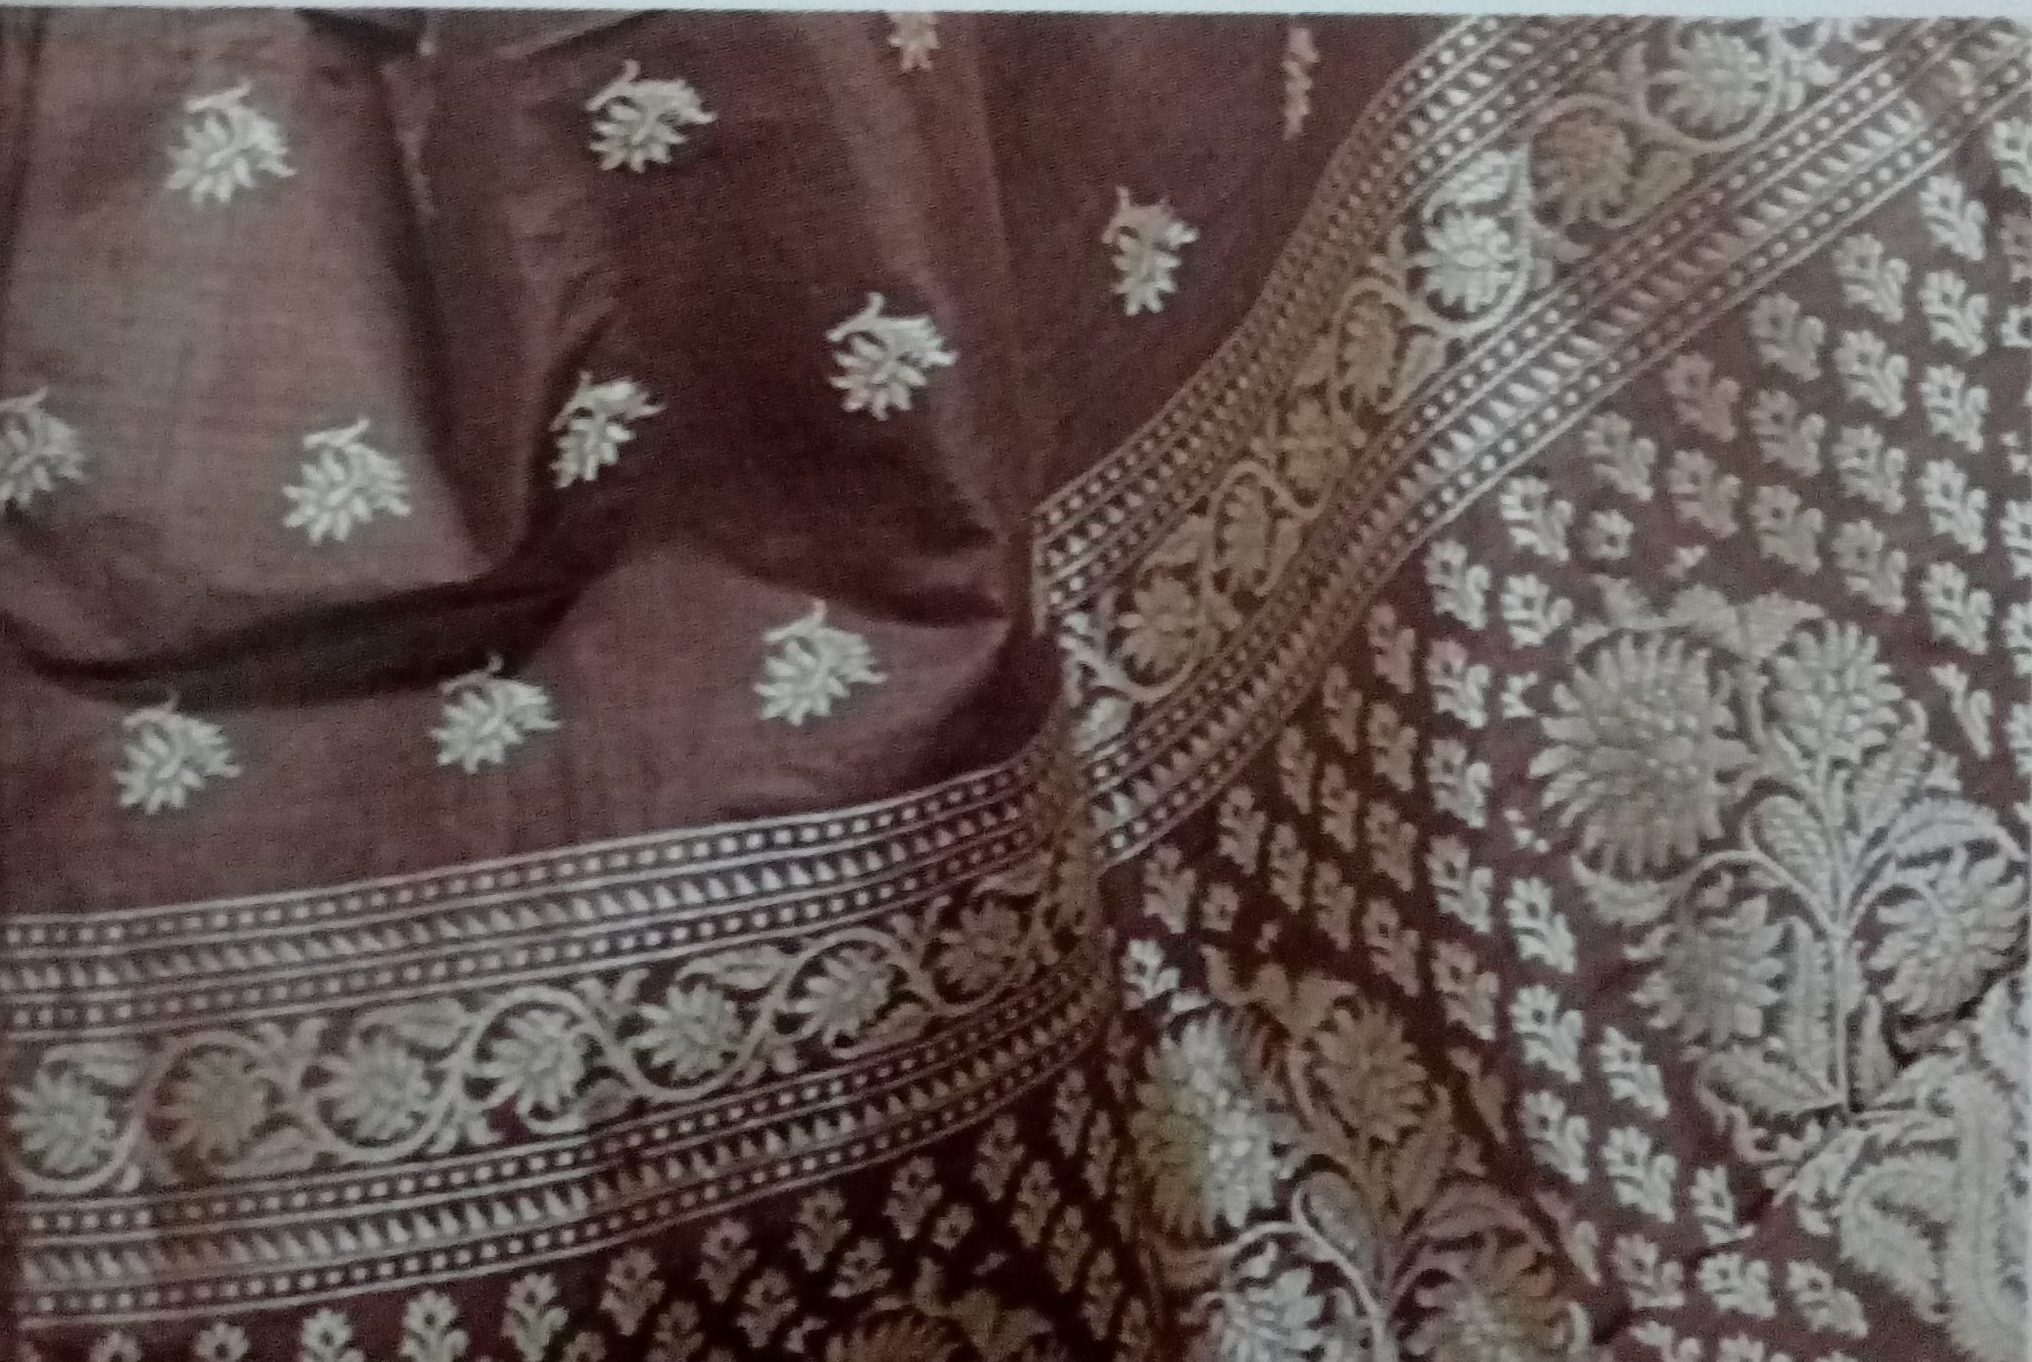 Cotton and Silk Weaving of Varanasi, Uttar Pradesh